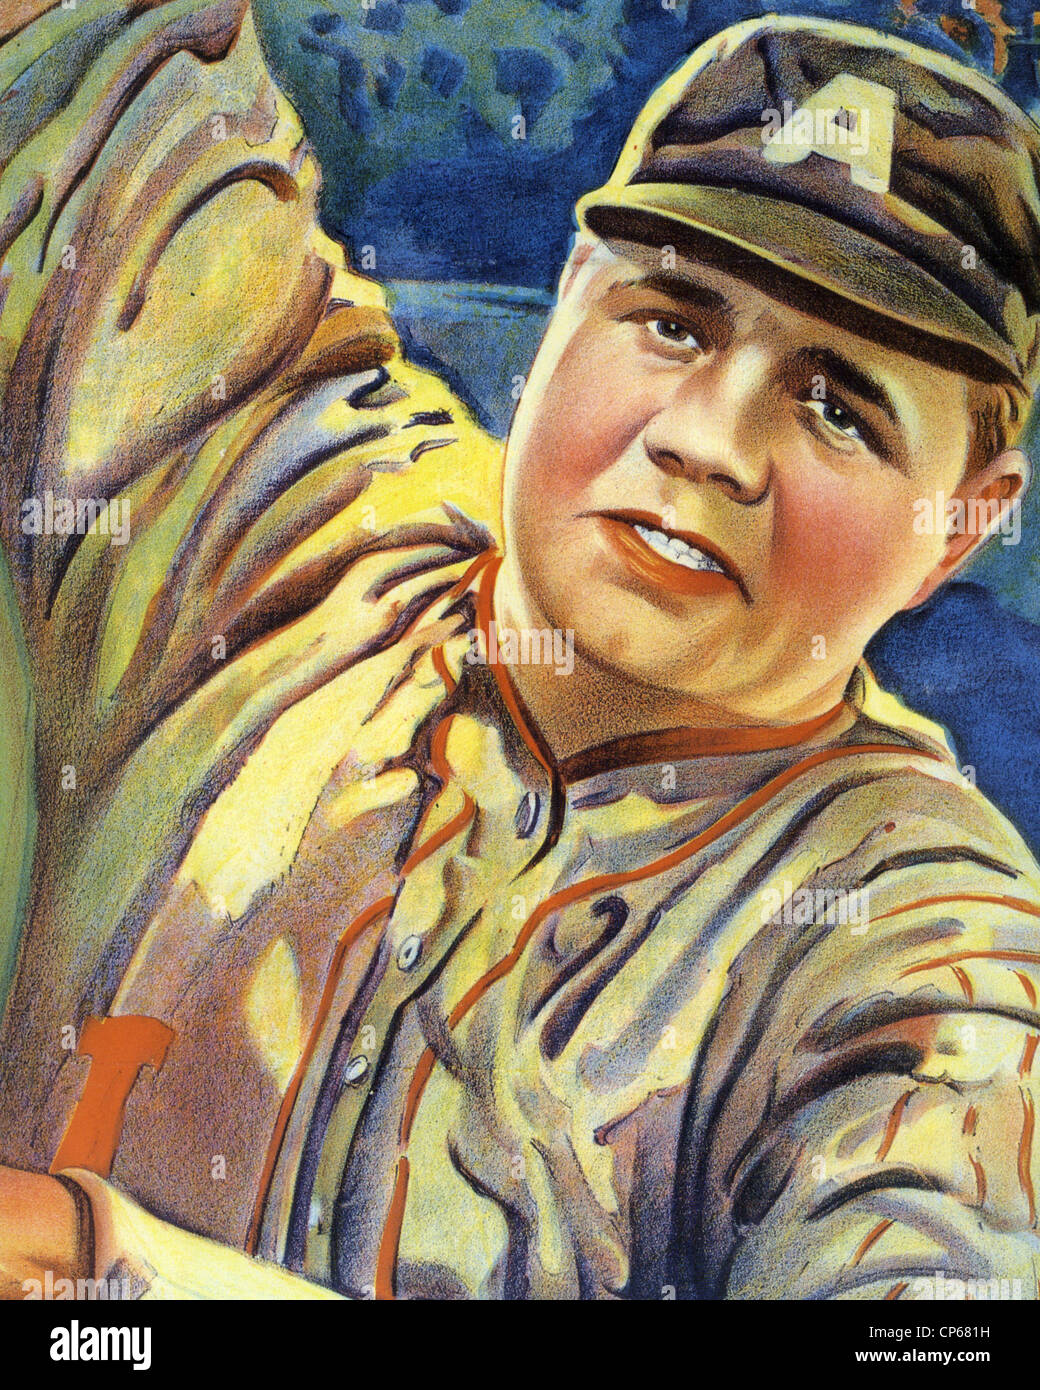 GEORGE HERMAN "" Babe Ruth (1895-1948) Noi giocatore di baseball come mostrato su un film poster Foto Stock